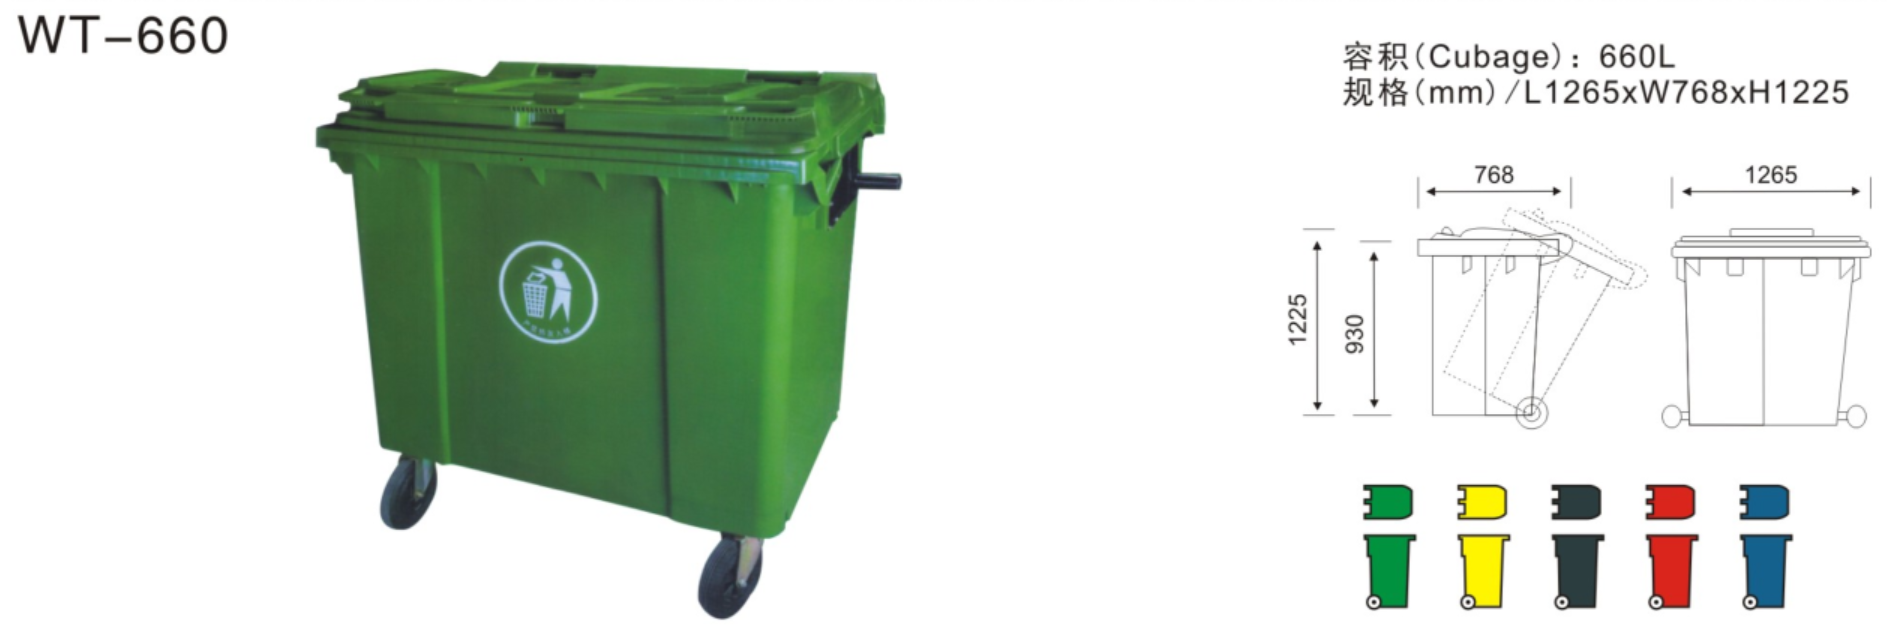 南充660L塑料垃圾桶